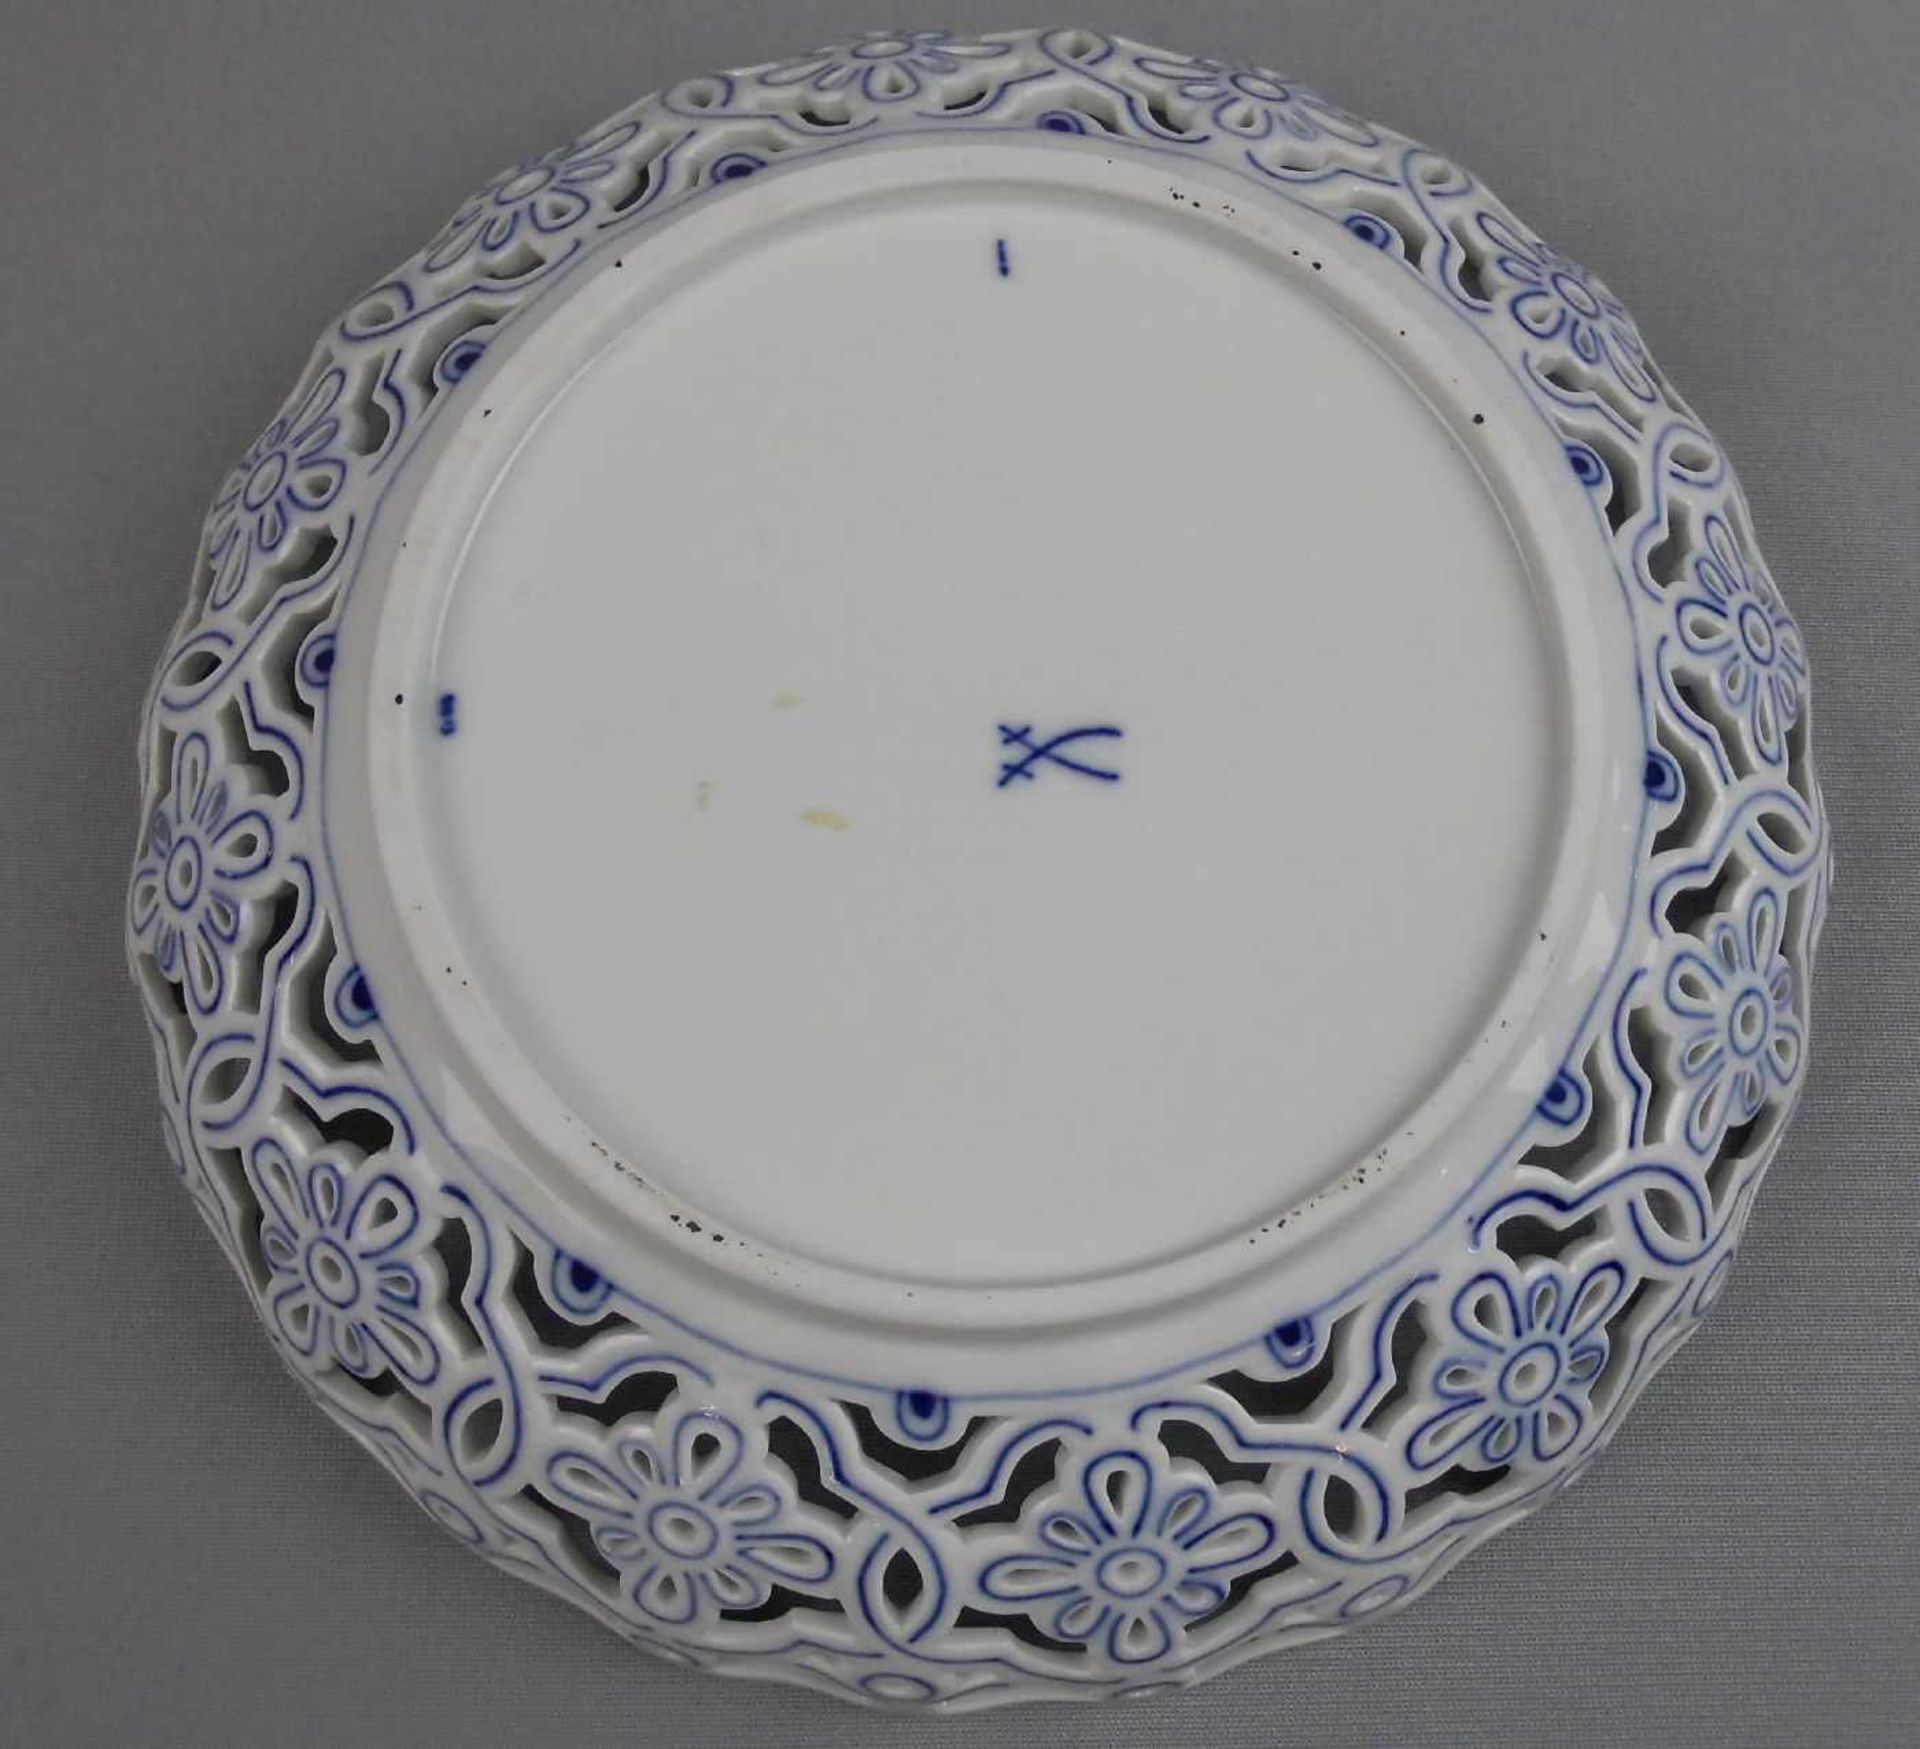 SCHALE / KORBSCHALE / bowl, Porzellan, Manufaktur Meissen, unterglasurblaue Schwertermarke, Marke - Image 4 of 5